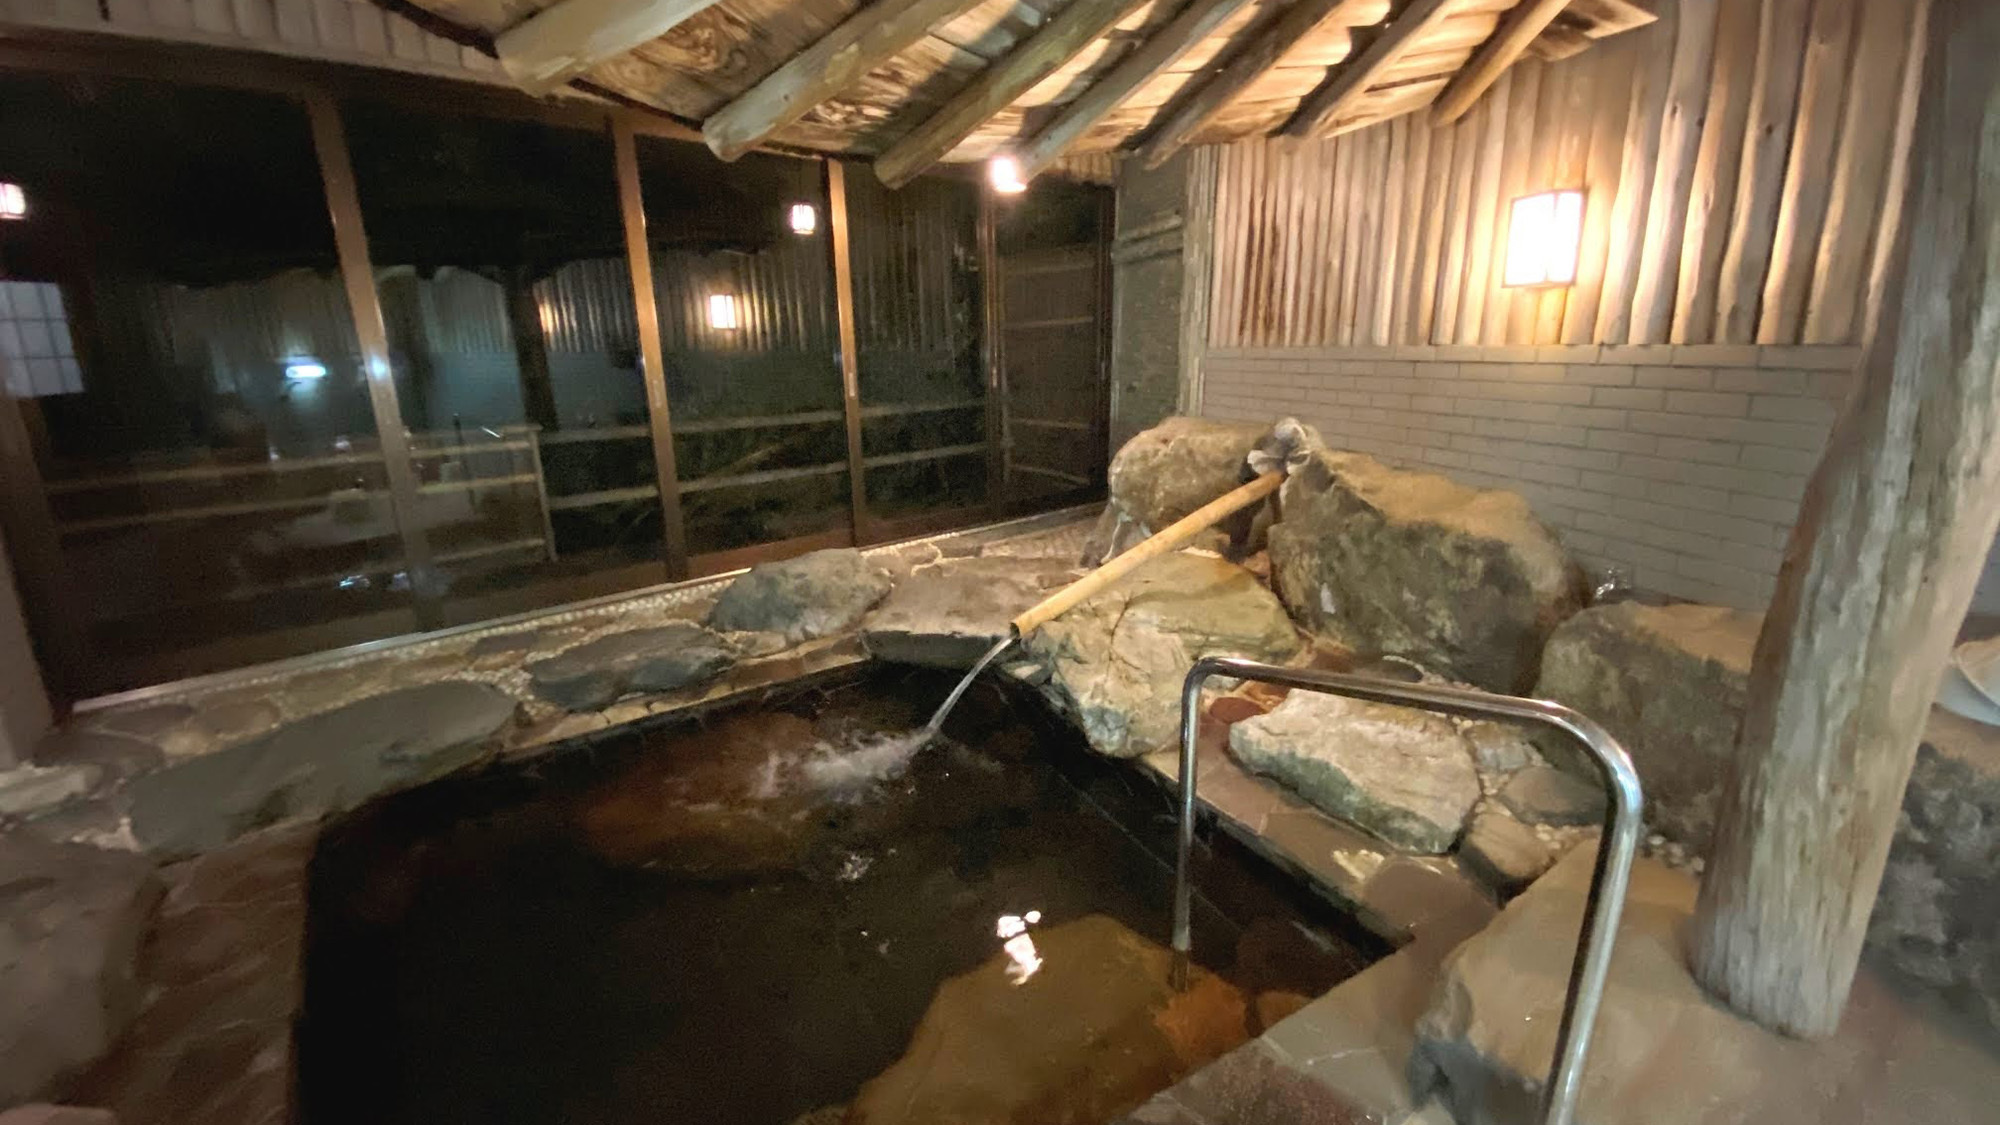 ・【風呂】当施設の岩風呂はミネラル豊富な湧水を沸かしたお湯を使用しています